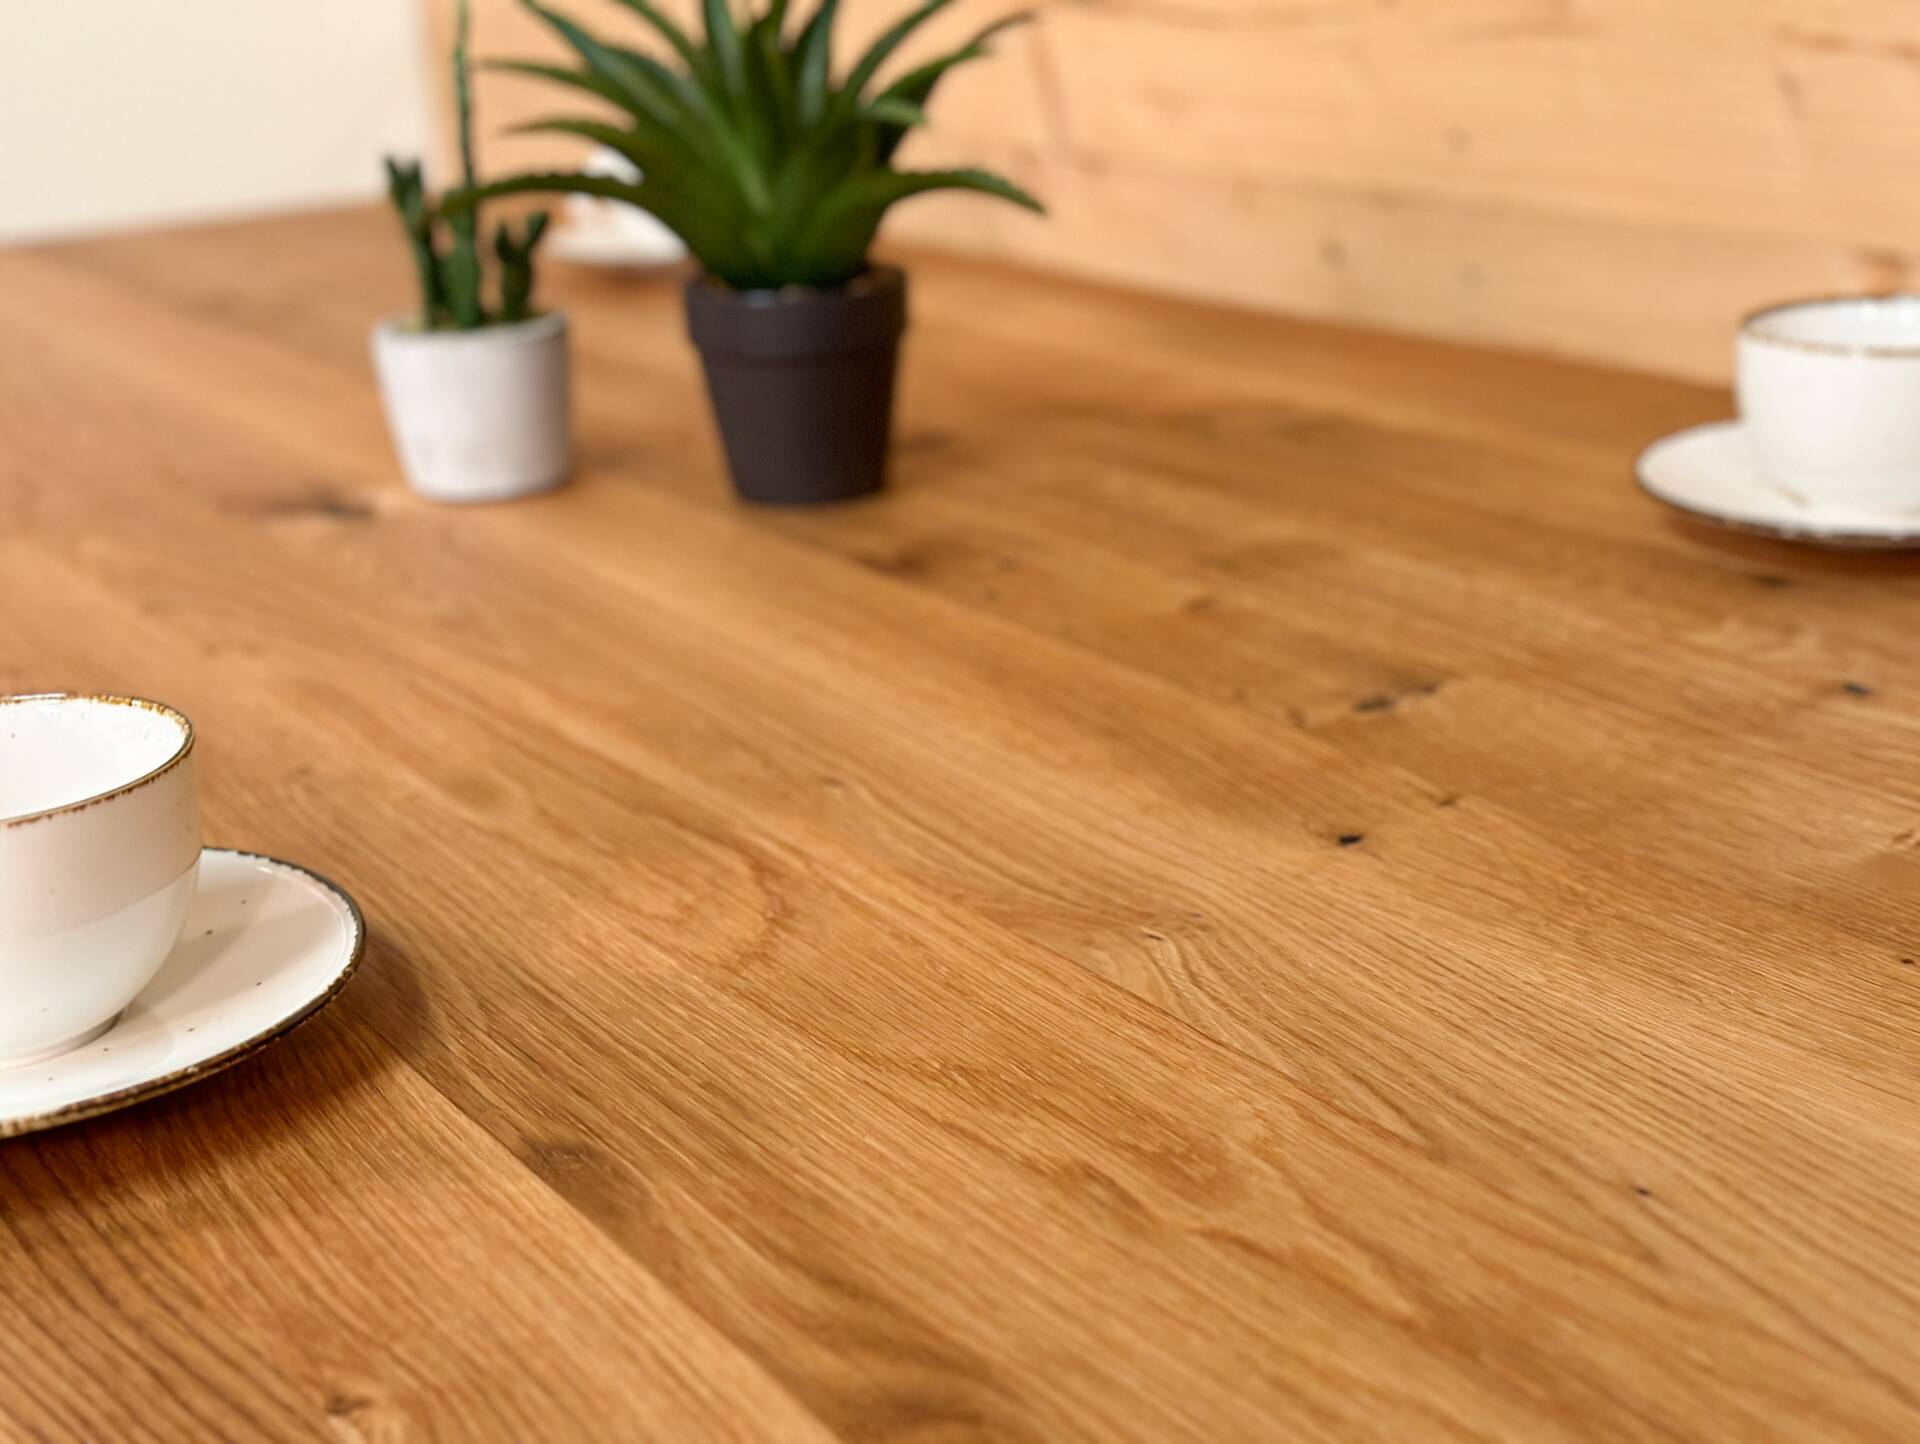 Tischplatte mit Baumkante, Wildeiche geölt, Material Massivholz 180 x 90 cm